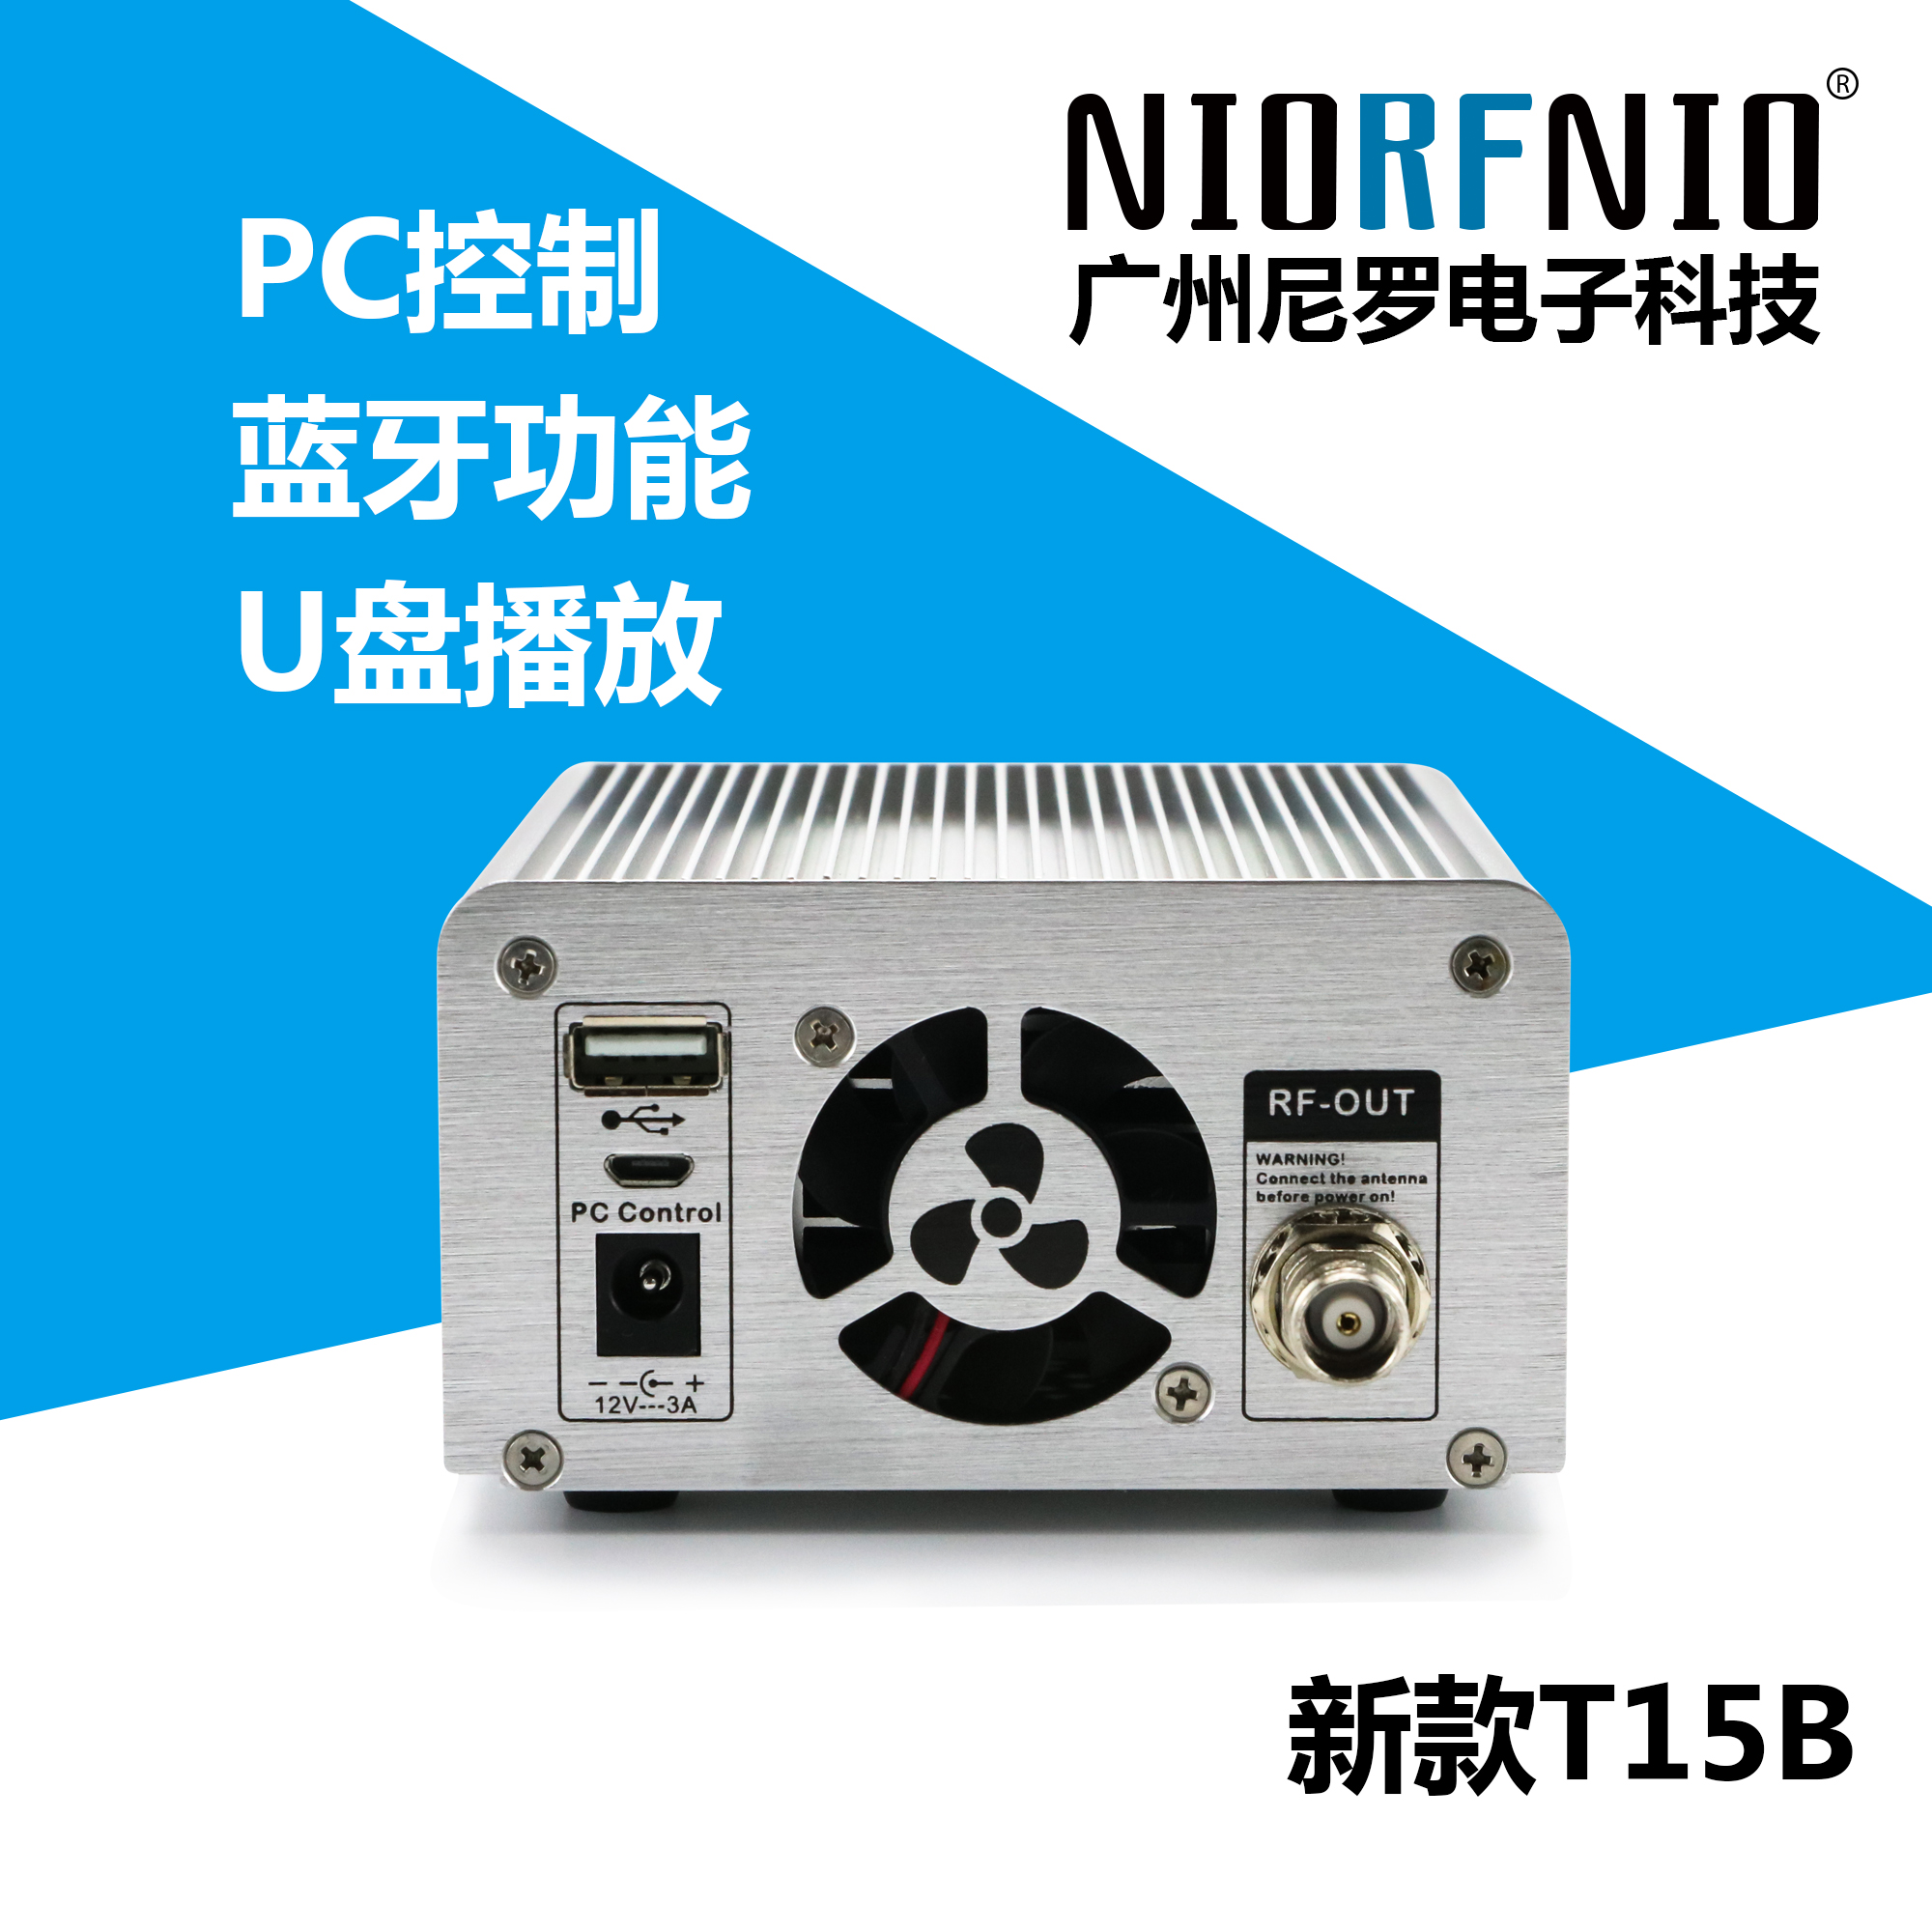 广州市尼罗NIO－T15BFM调频发射厂家尼罗NIO－T15BFM调频发射机U盘播放高保真立体音效